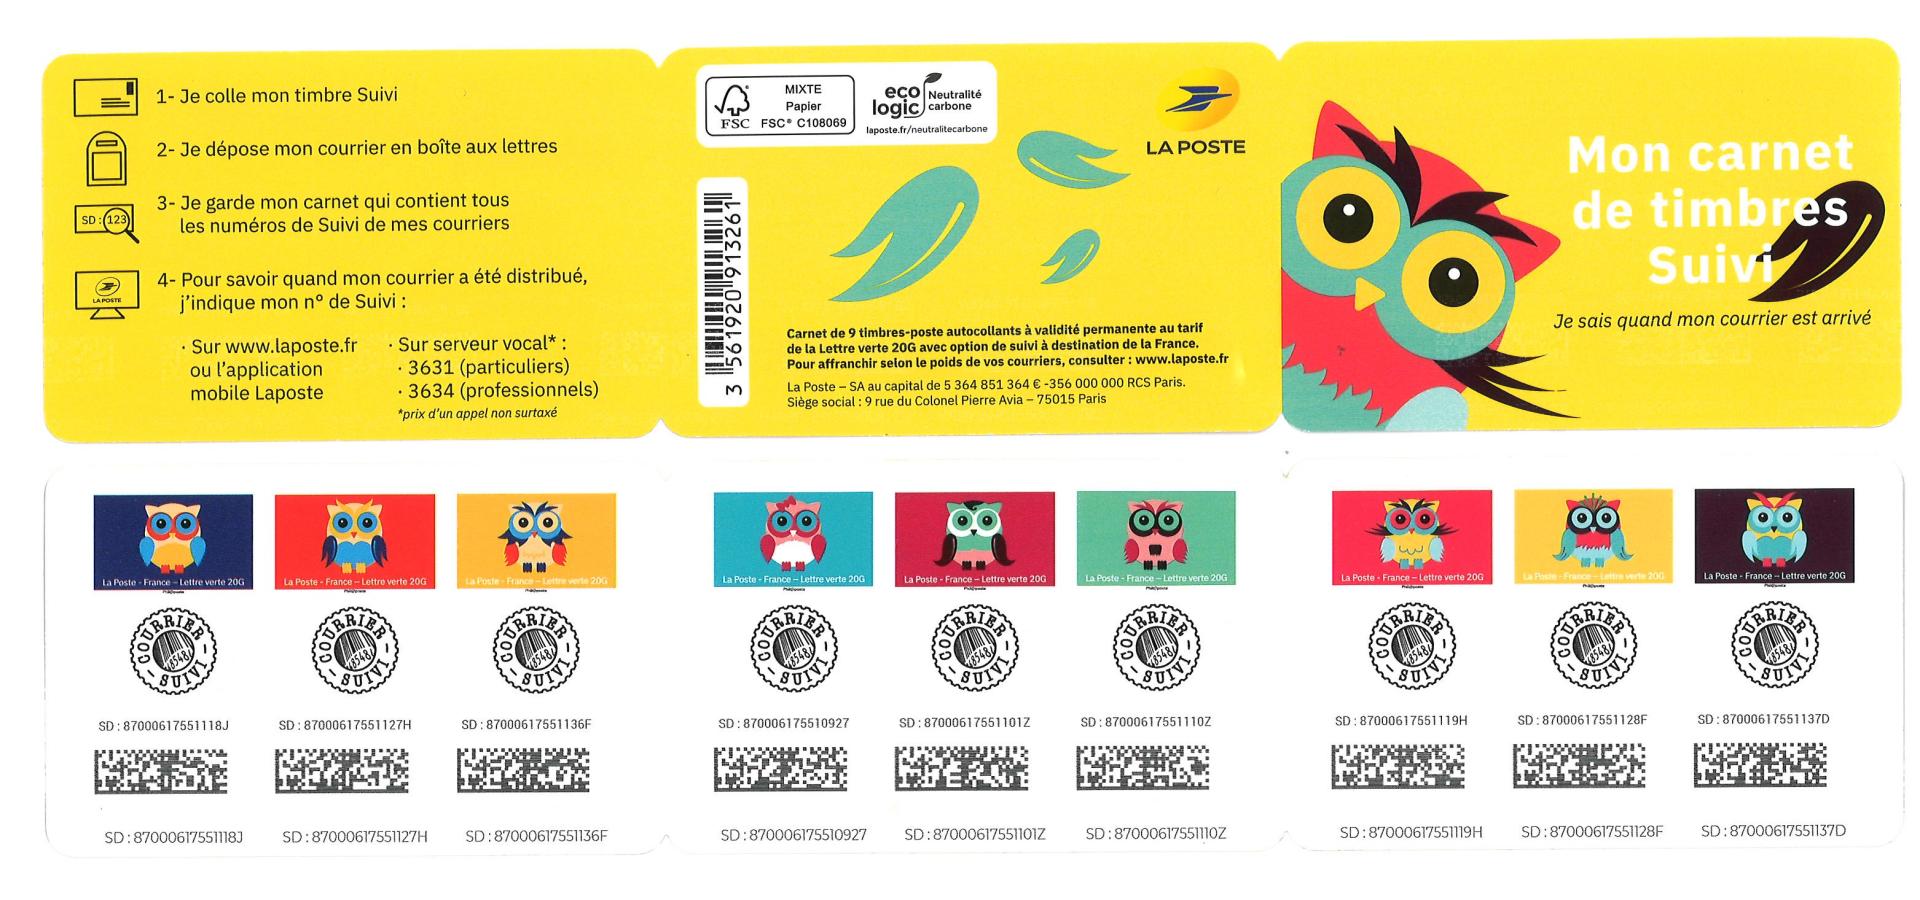 Carnet 9 timbres - Chouette - Lettre verte suivie